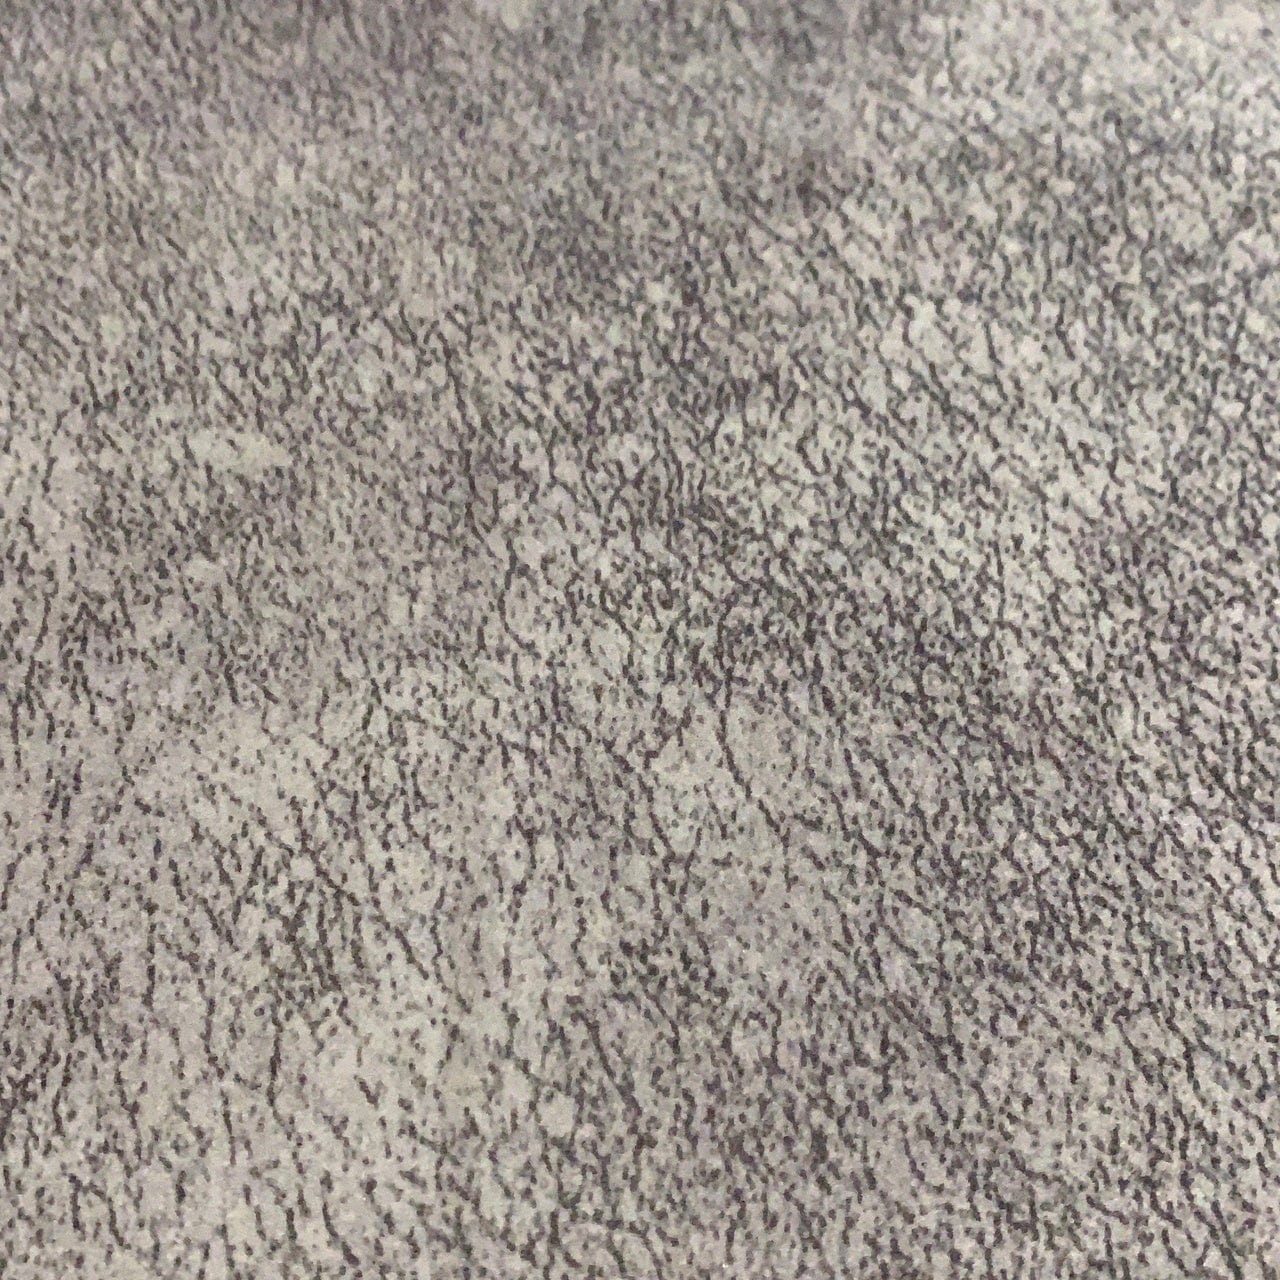 Colchón Viscoelástico para Perros S (60 x 40 cm) / Gris Perla baluka mascotas